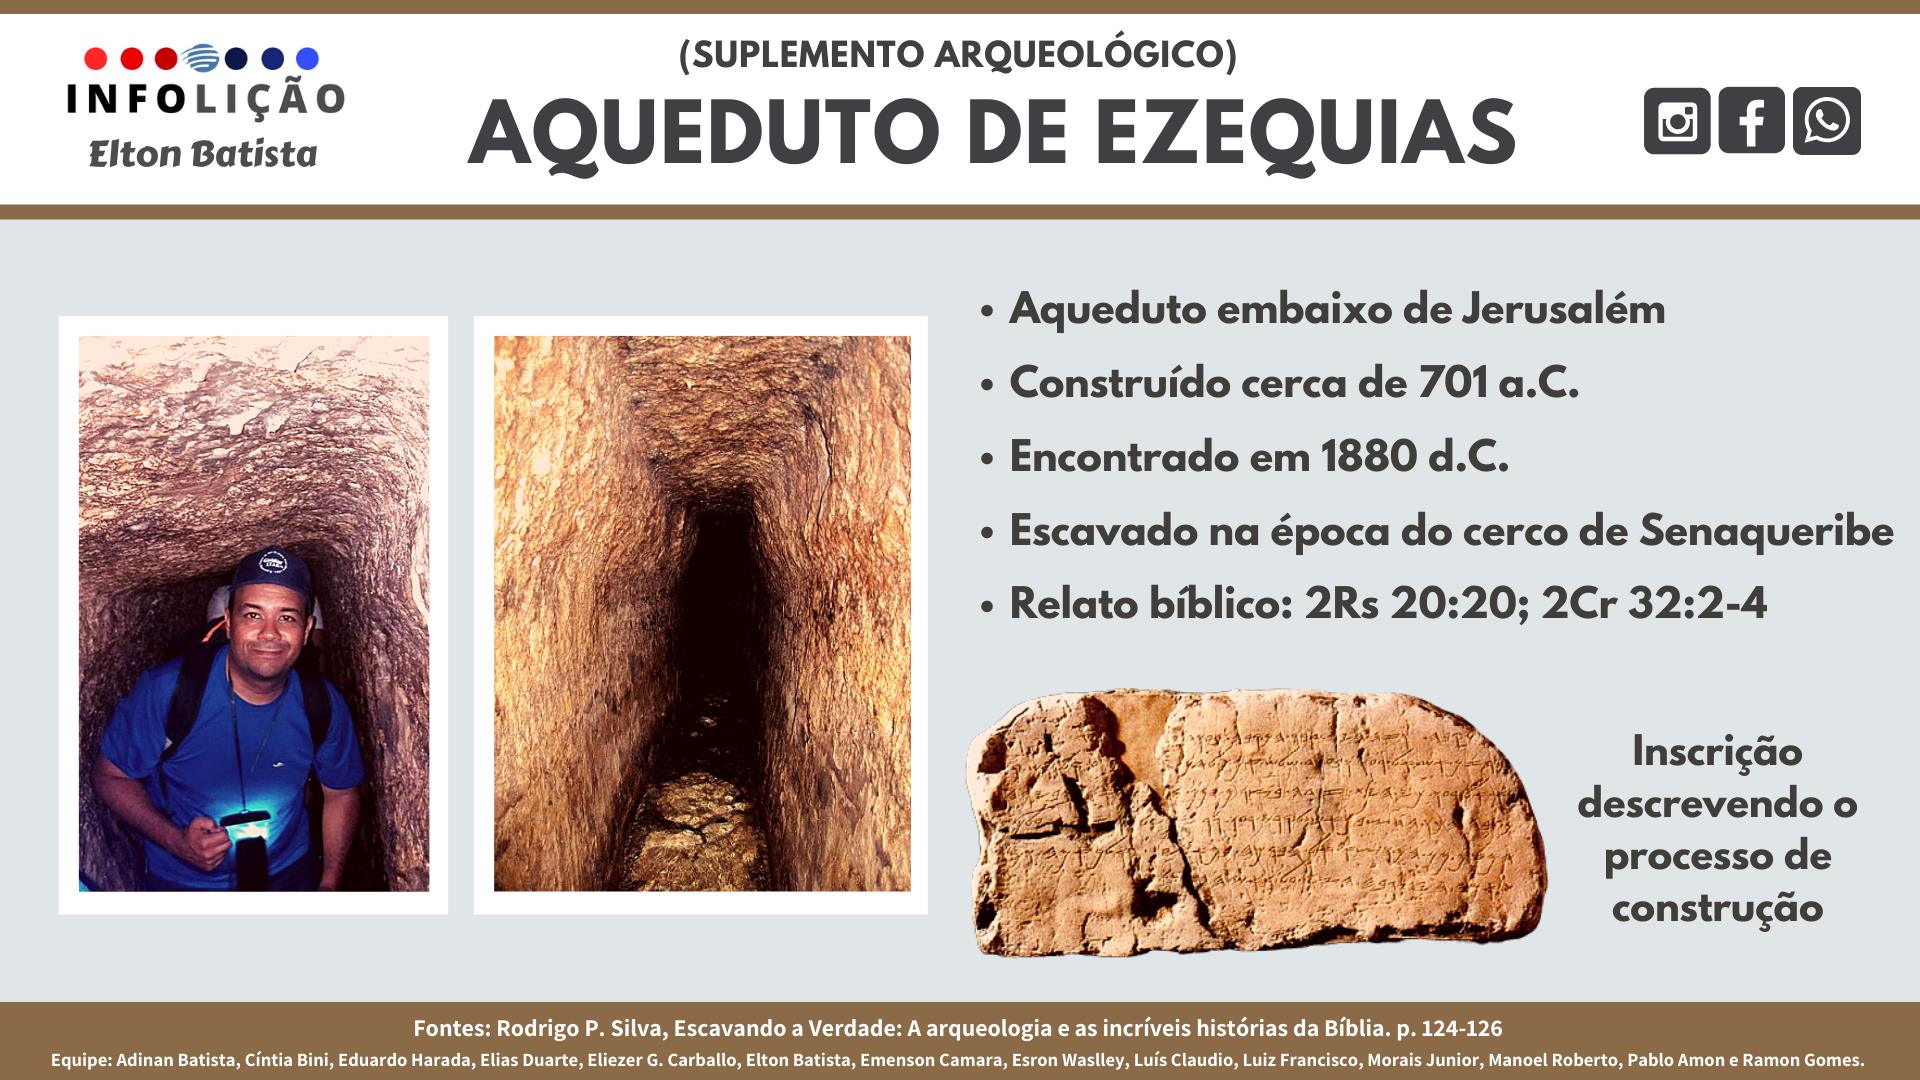 Suplemento Arqueológico - Aqueduto de Ezequias